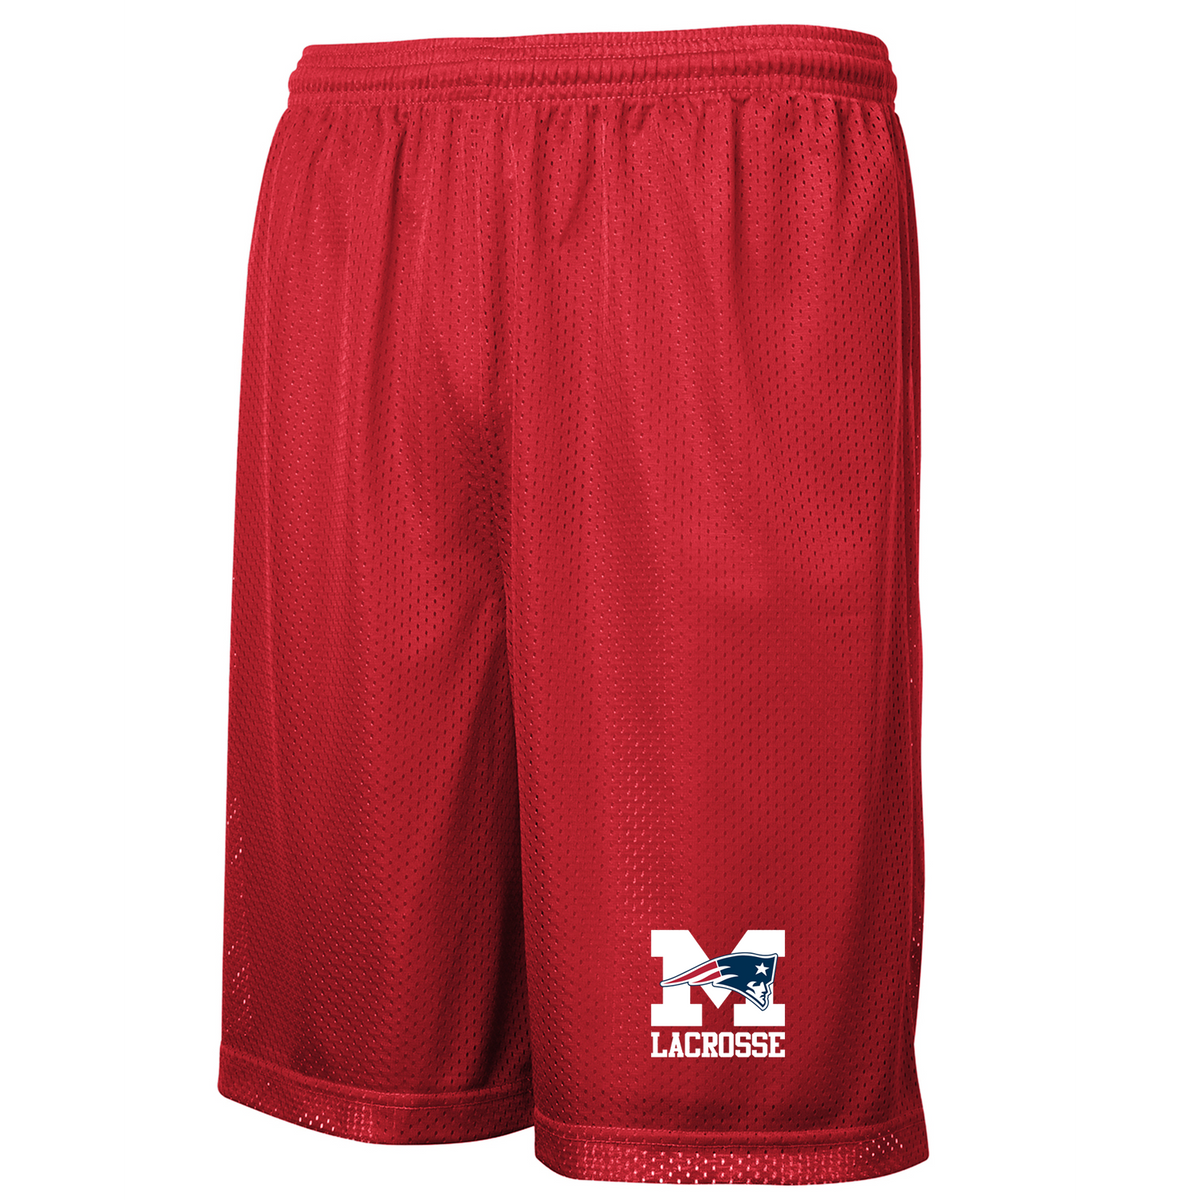 Metro Christian Lacrosse Classic Mesh Shorts